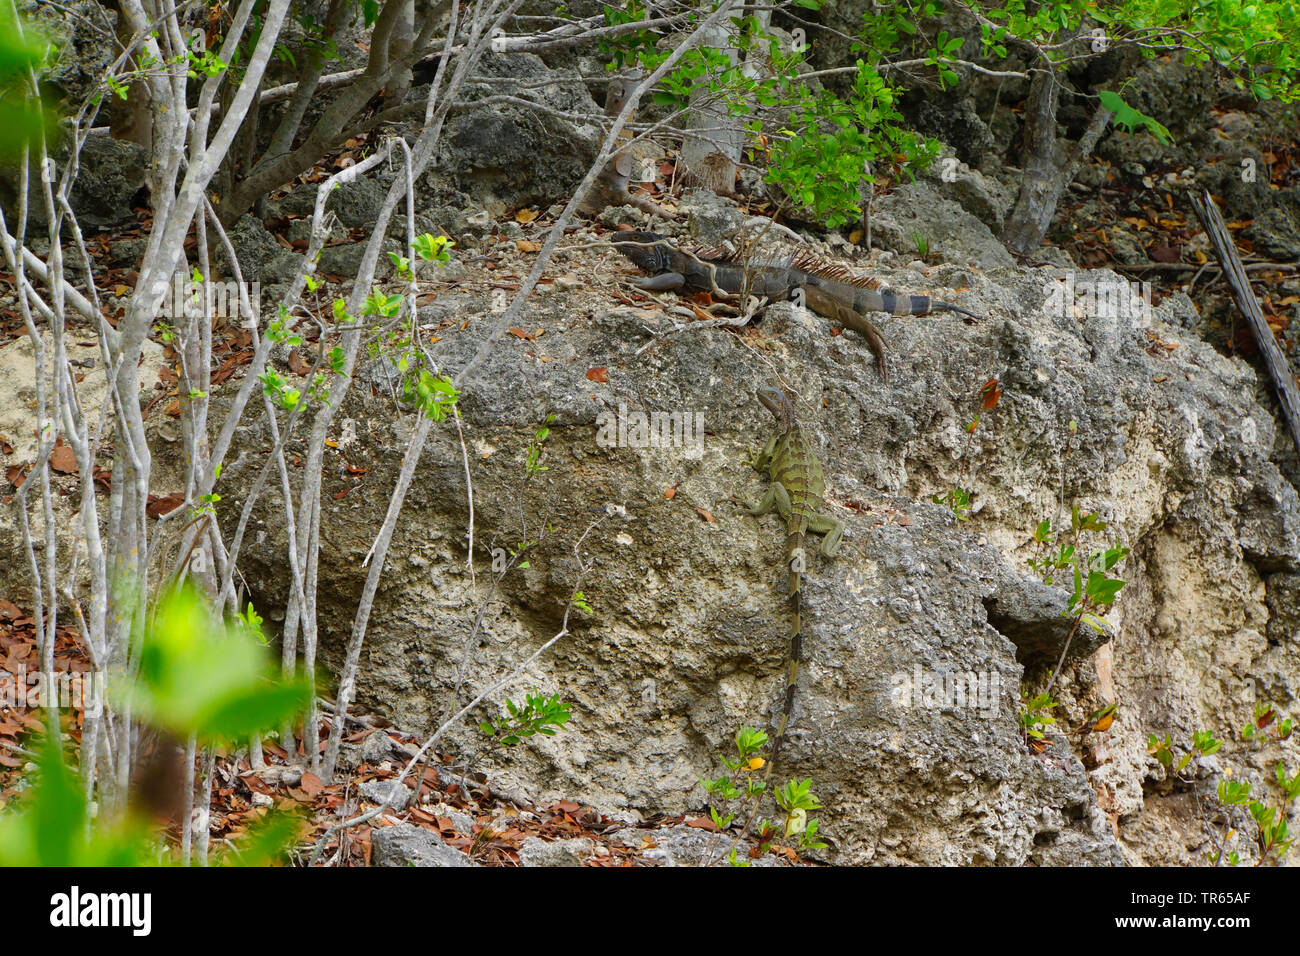 Iguane vert, Iguana iguana iguana (commune), assis sur un rocher, bien camouflés, USA, Floride, Key Largo Banque D'Images